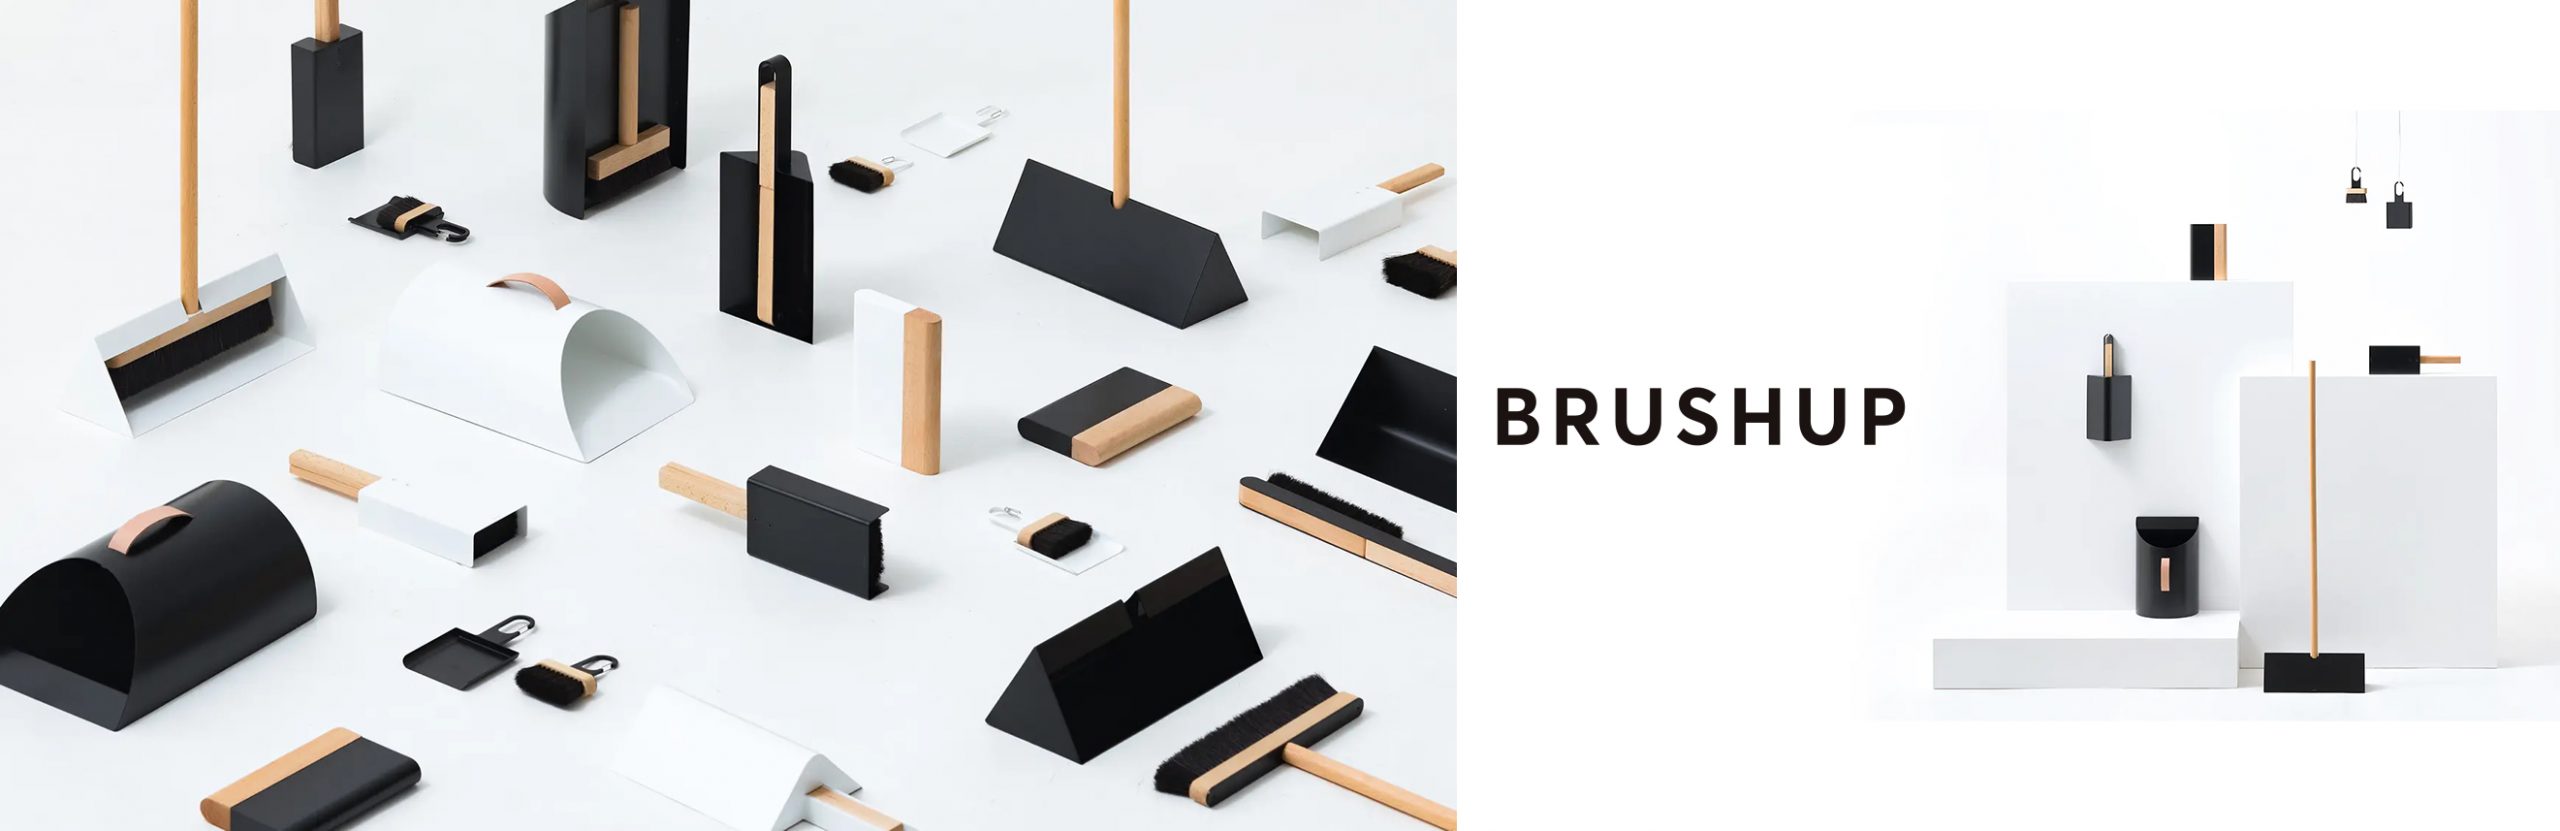 新しい掃除道具のシリーズ「BLUSHUP」。掃除道具がひとつのインテリアアイテムに。金物と木材を使った新しいアイデア商品が生み出されていきます。